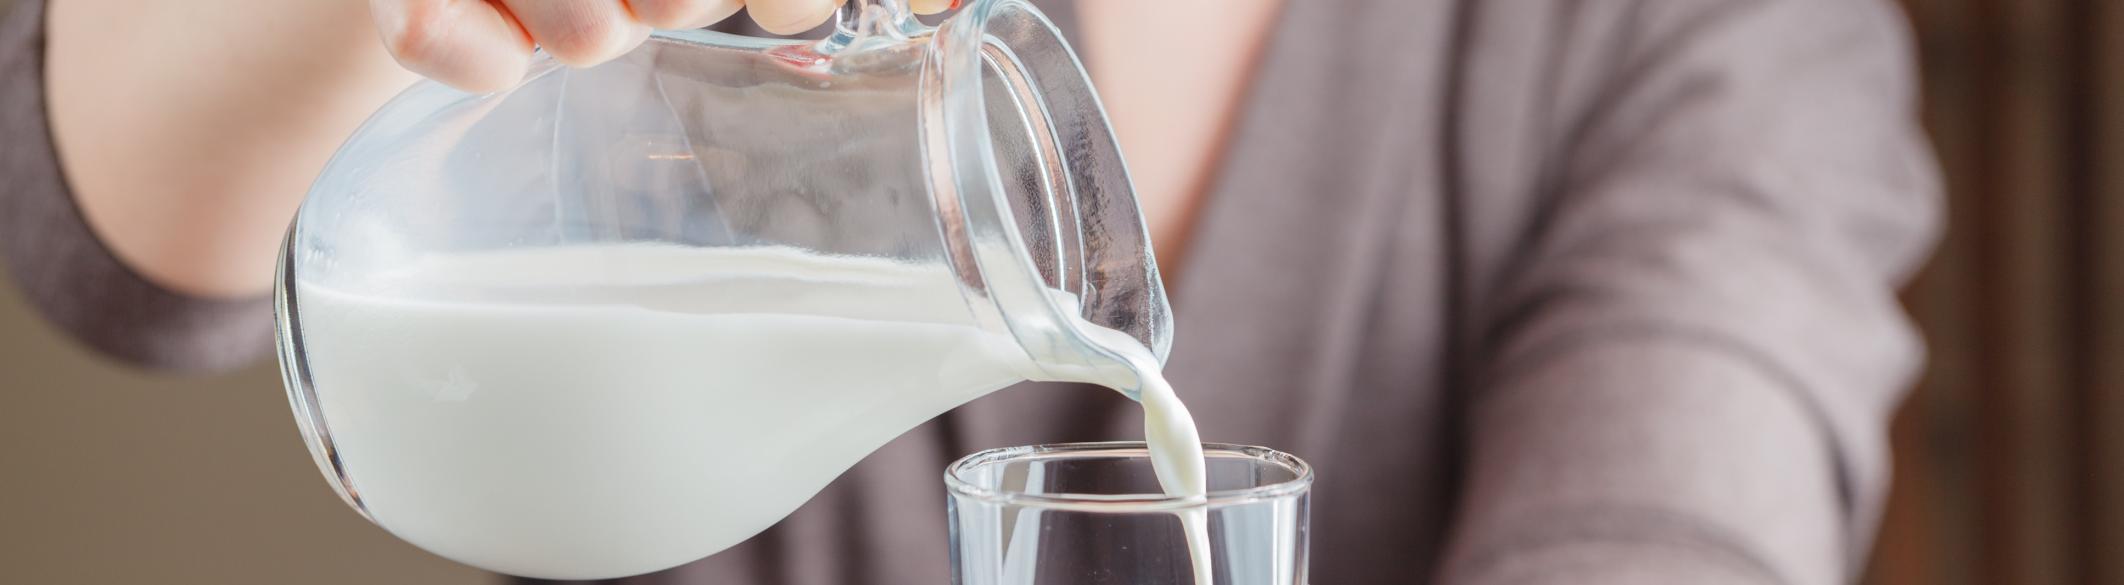 Может ли альтернативное молоко повлиять на изменение климата? 